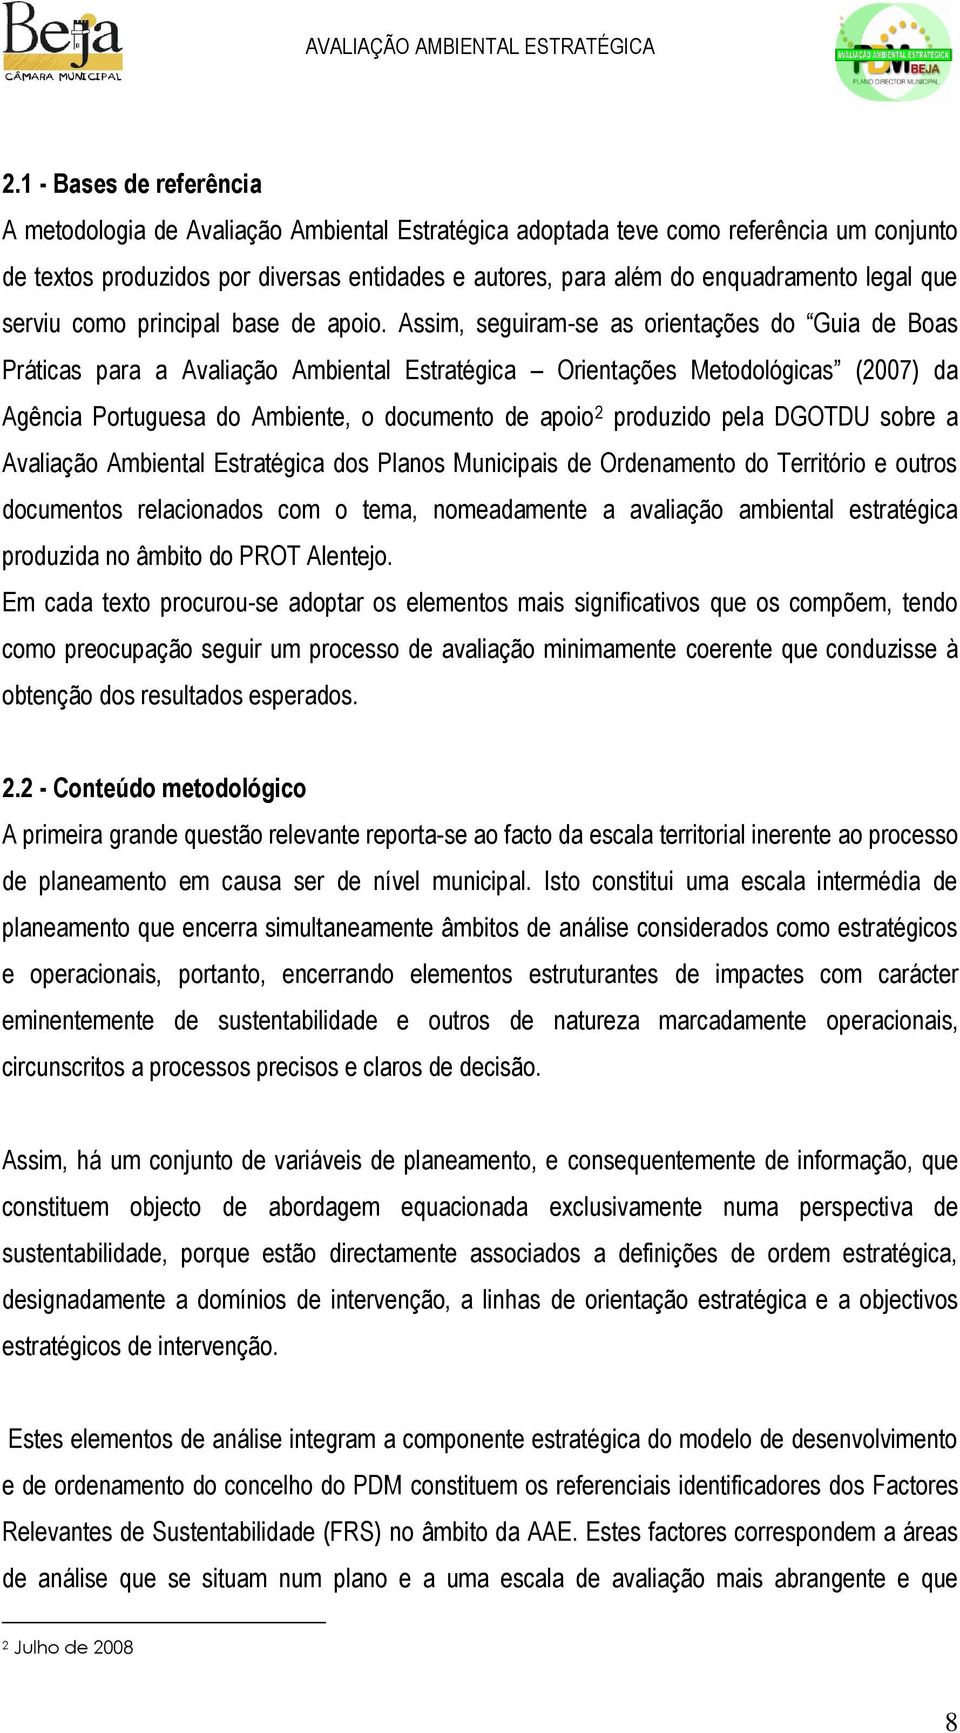 Assim, seguiram-se as orientações do Guia de Boas Práticas para a Avaliação Ambiental Estratégica Orientações Metodológicas (2007) da Agência Portuguesa do Ambiente, o documento de apoio 2 produzido